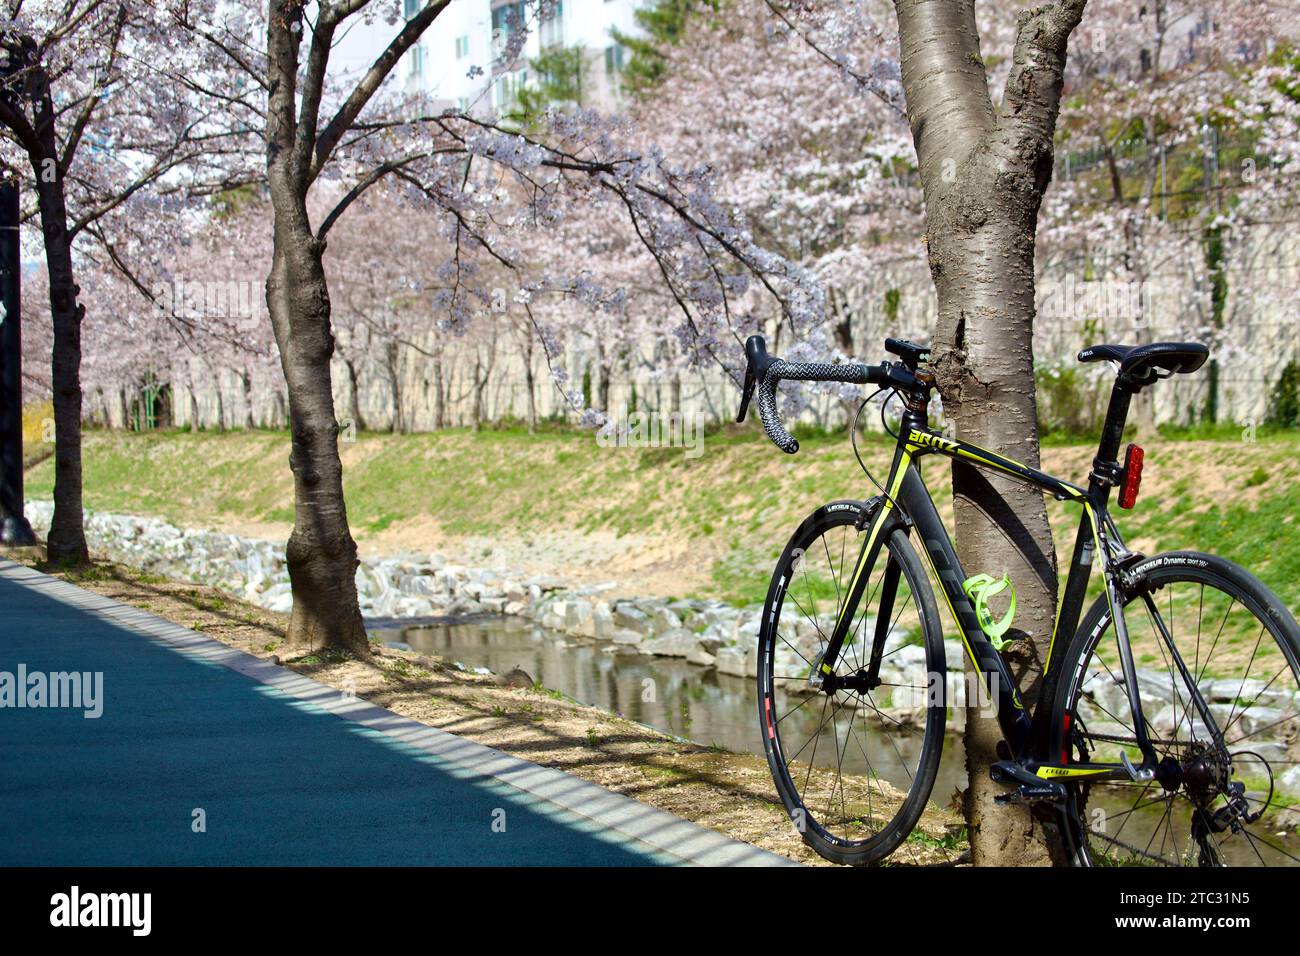 Una bici da strada si appoggia su un albero, incorniciato da fiori di ciliegio in testa e da un ruscello sereno sottostante, catturando l'essenza di un tranquillo giro in primavera. Foto Stock